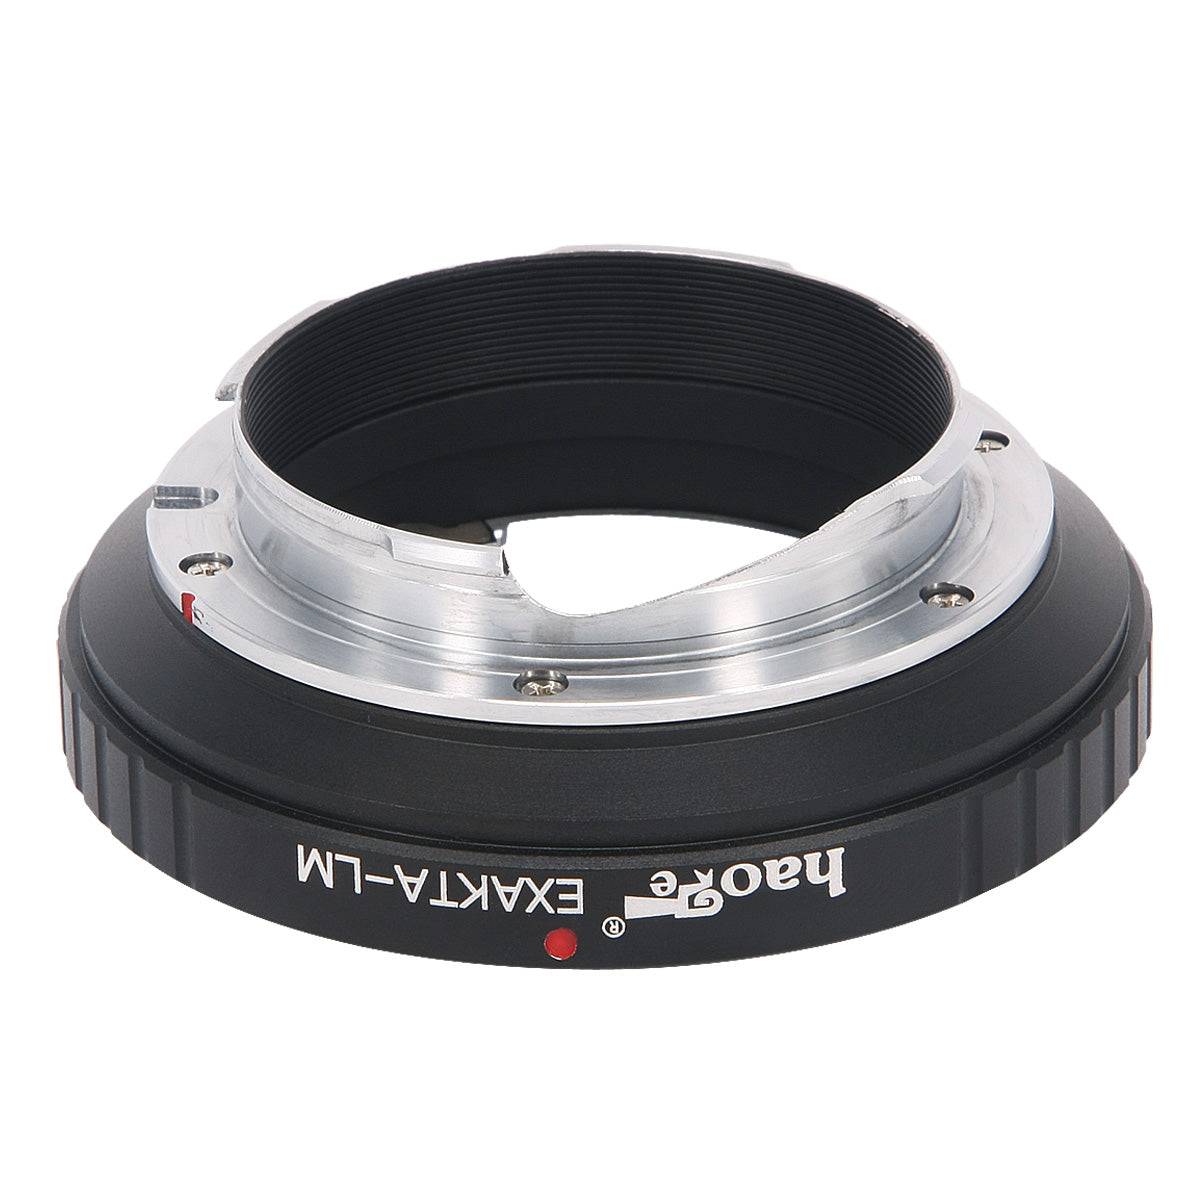 Haoge Lens Mount Adapter for Exakta EXA mount Lens to Leica M-mount Camera such as M240, M240P, M262, M3, M2, M1, M4, M5, CL, M6, MP, M7, M8, M9, M9-P, M Monochrom, M-E, M, M-P, M10, M-A